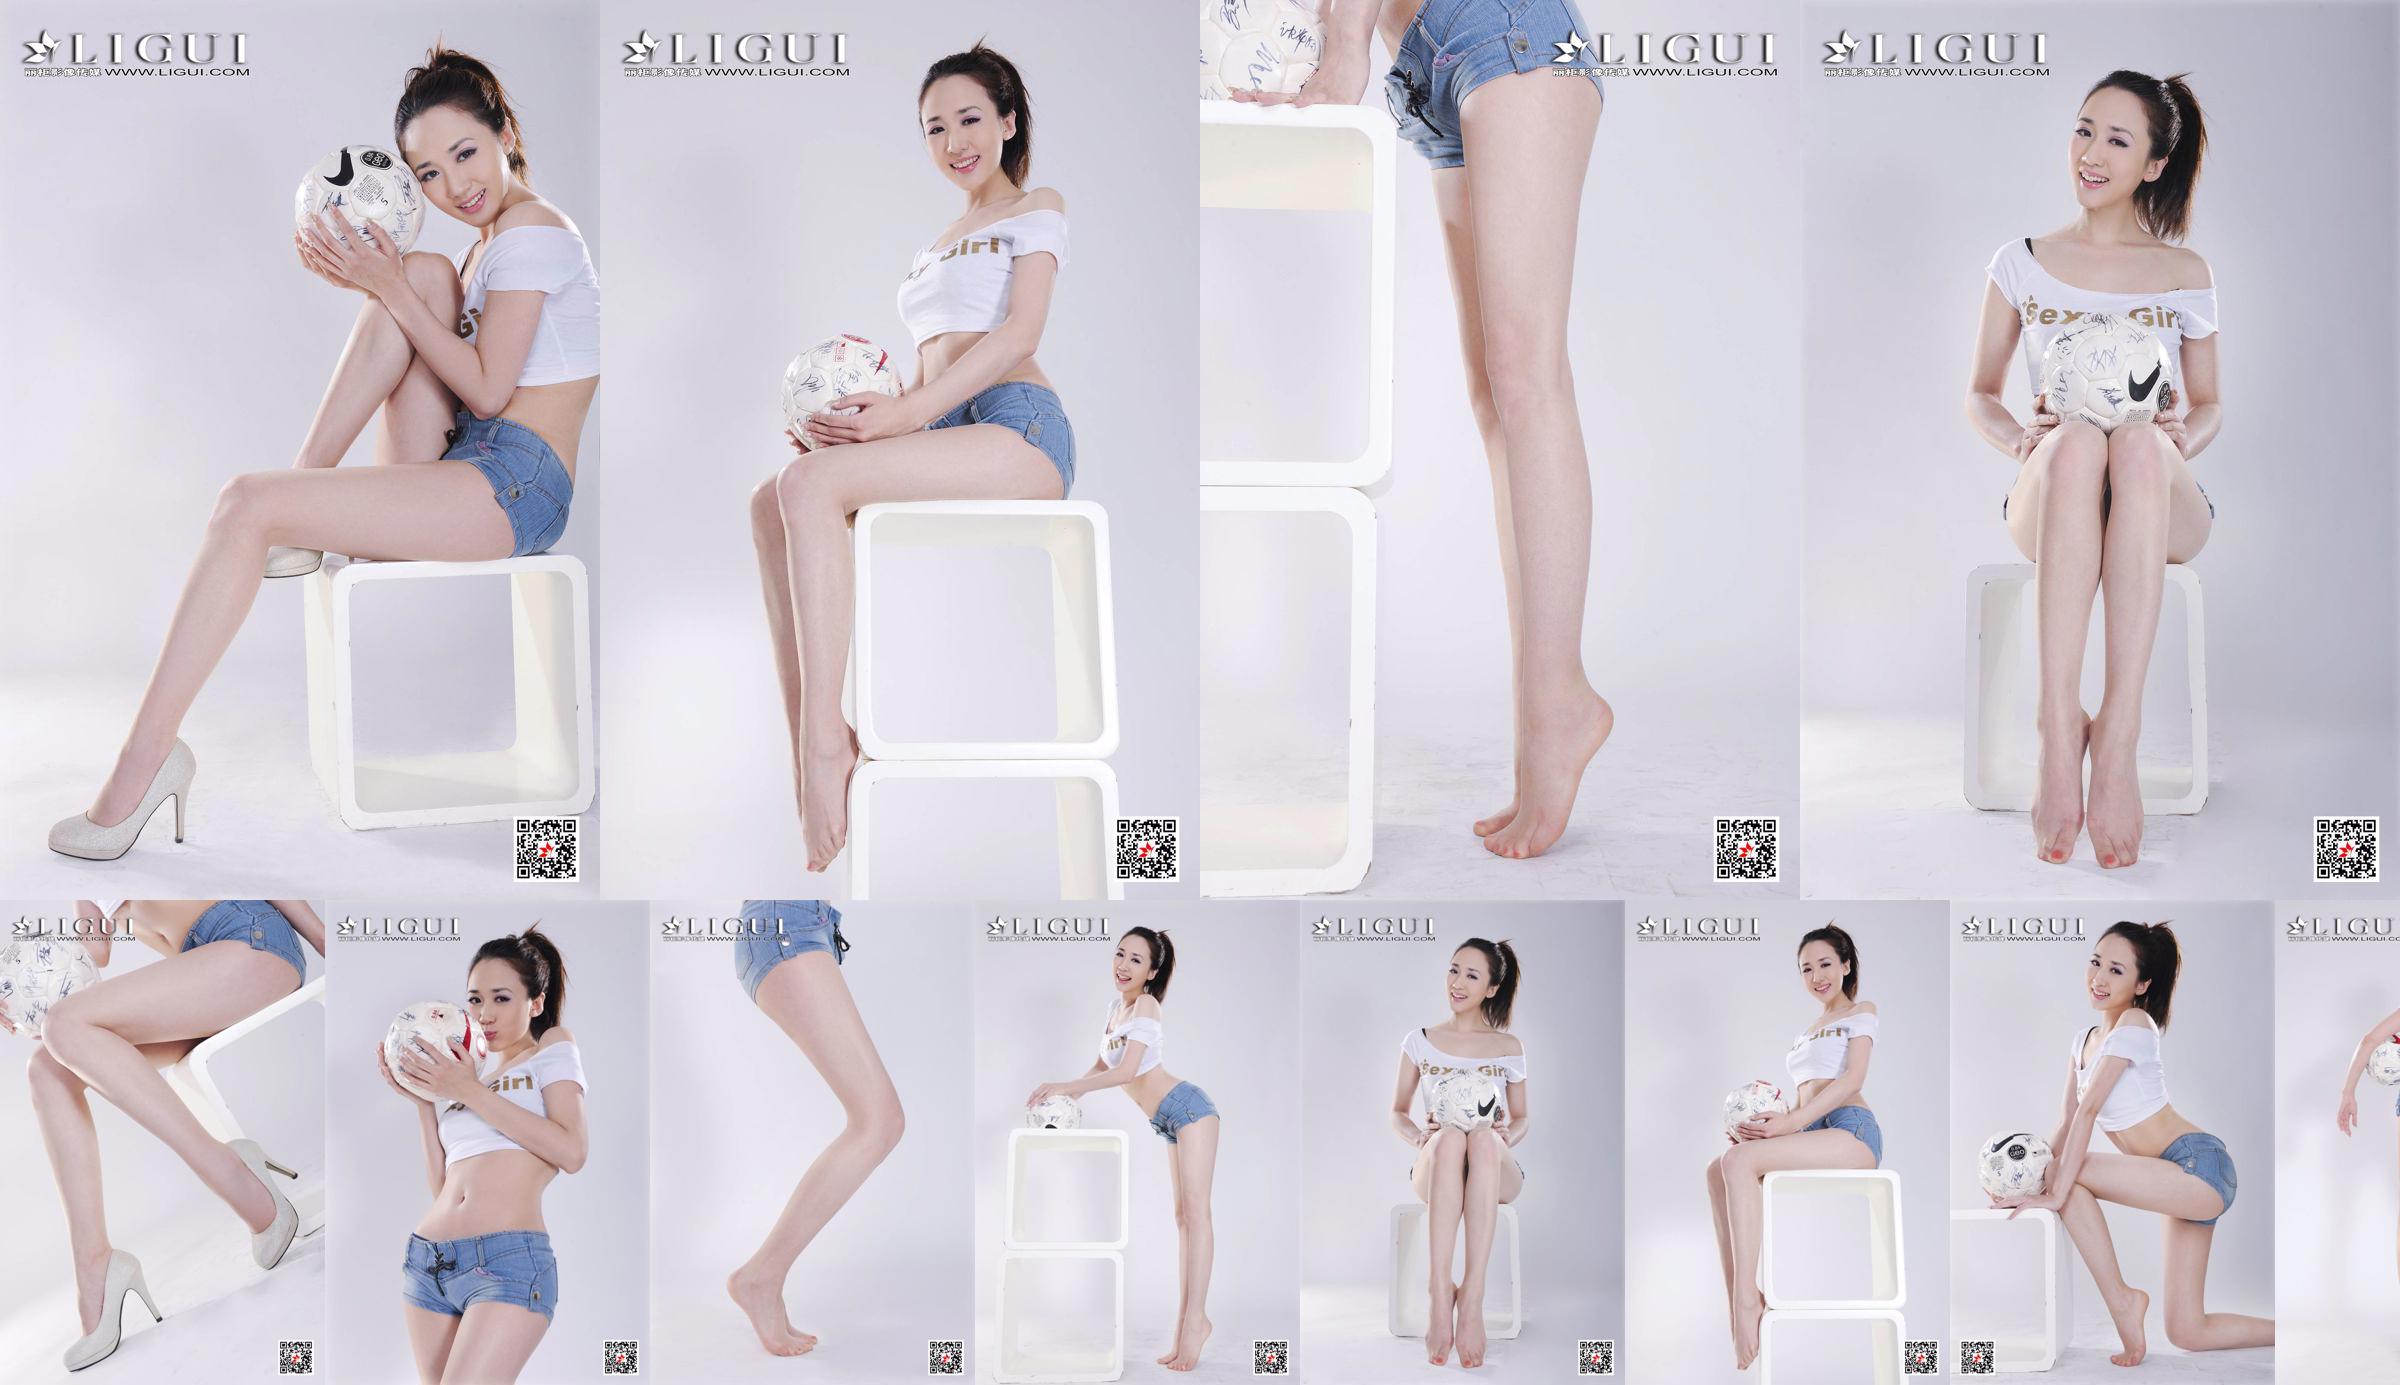 Model Qiu Chen "Gadis Sepak Bola Celana Super Pendek" [LIGUI] No.d44bcb Halaman 27